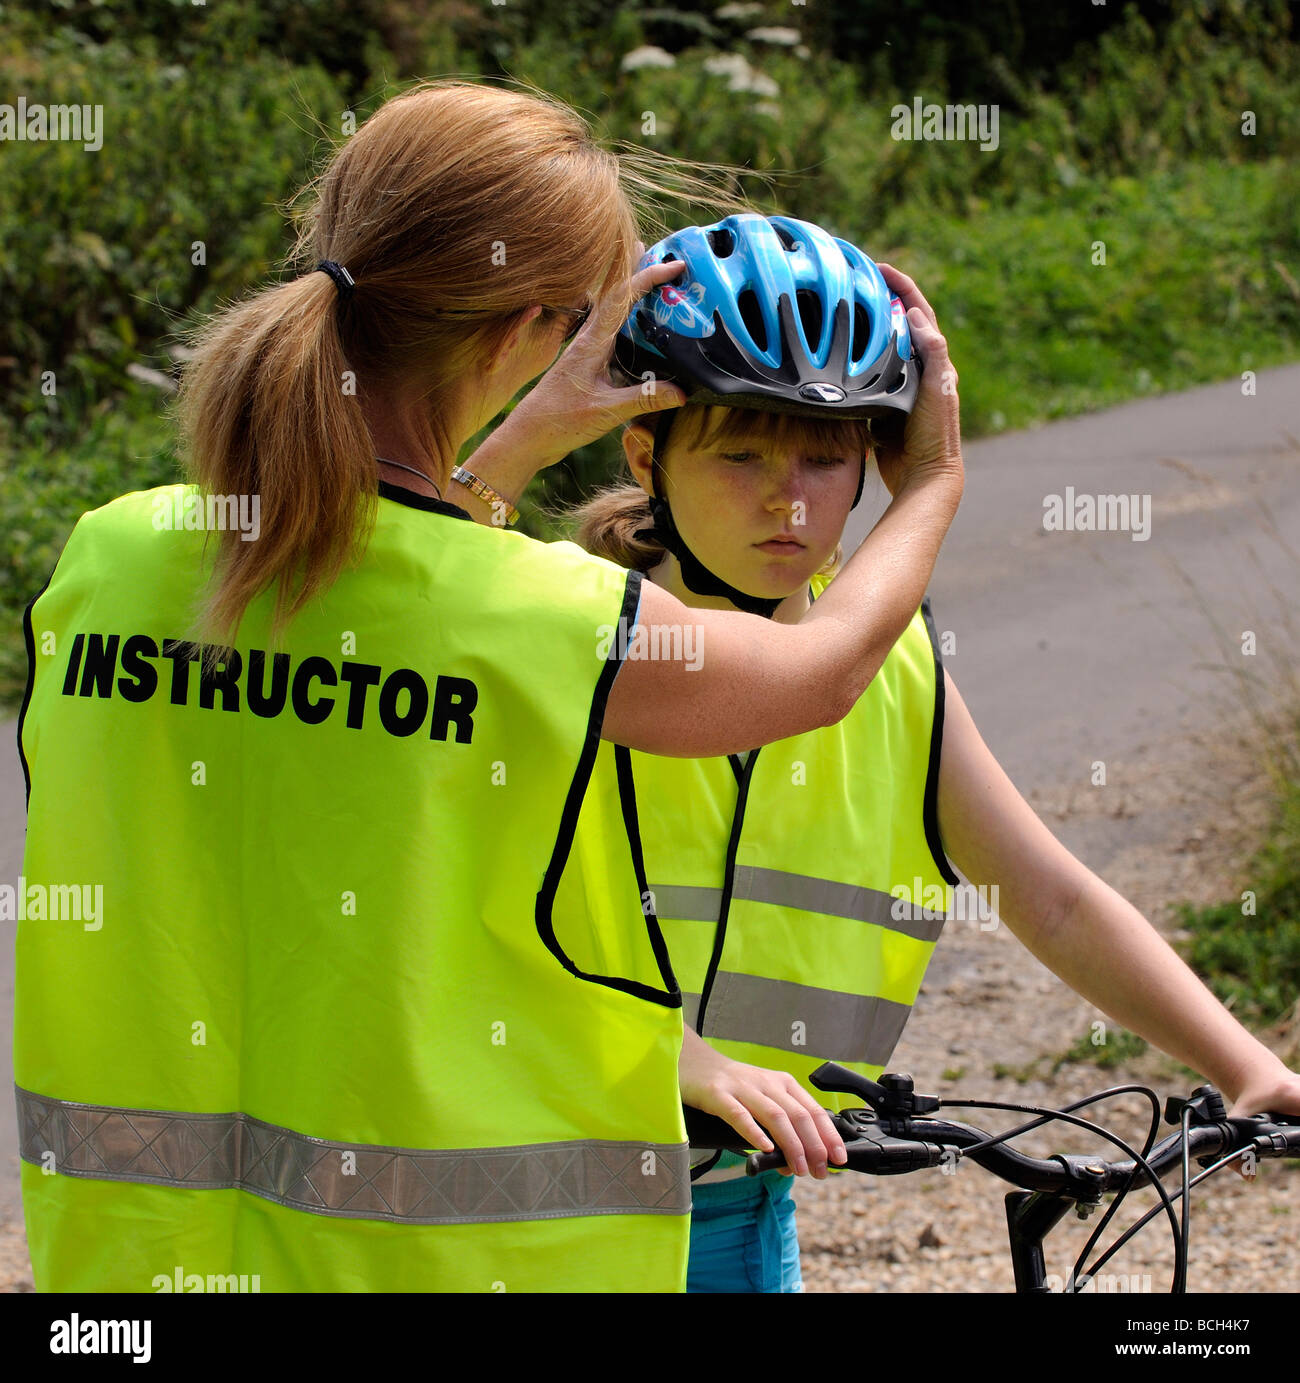 https://c8.alamy.com/compde/bch4k7/weiblichen-zyklus-dozenten-tragen-eine-hohe-sichtbarkeit-reflektierende-sicherheitsweste-passt-ein-fahrradhelmes-schuler-bch4k7.jpg